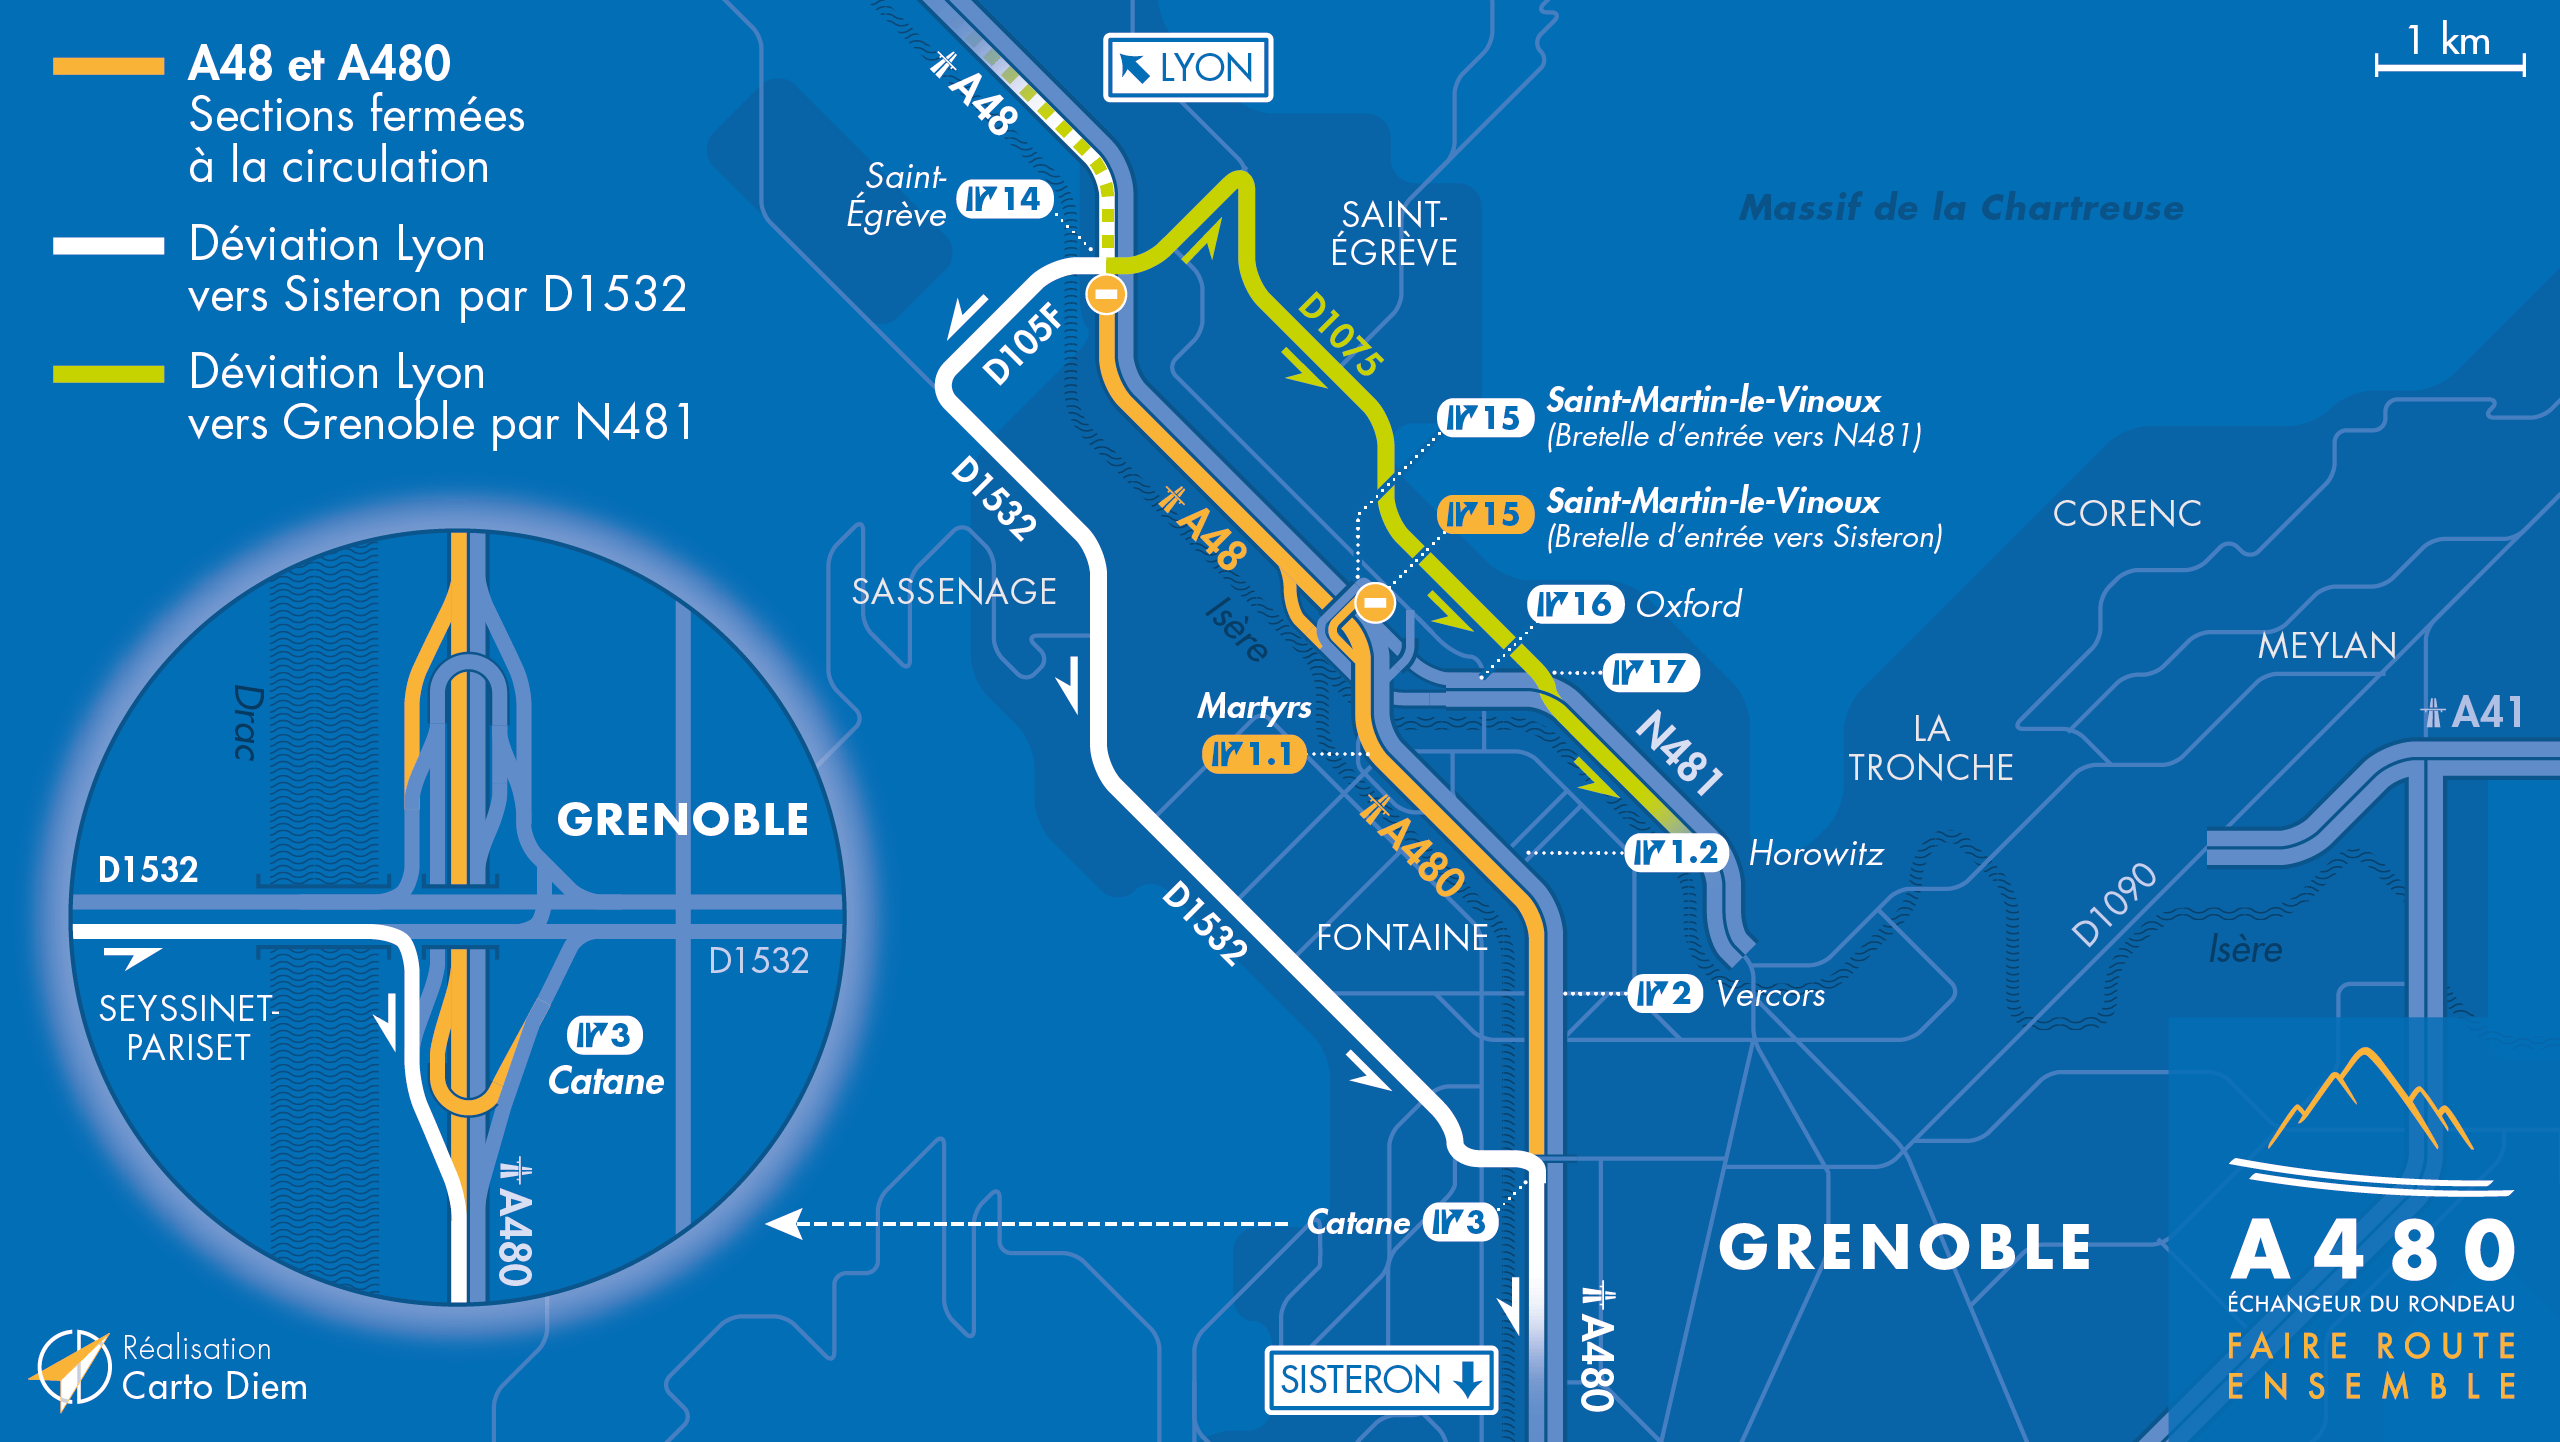 Carte de déviation suite aux travaux sur l'autoroute A480 entre le diffuseur de Saint-Égrève et le diffuseur de Catane